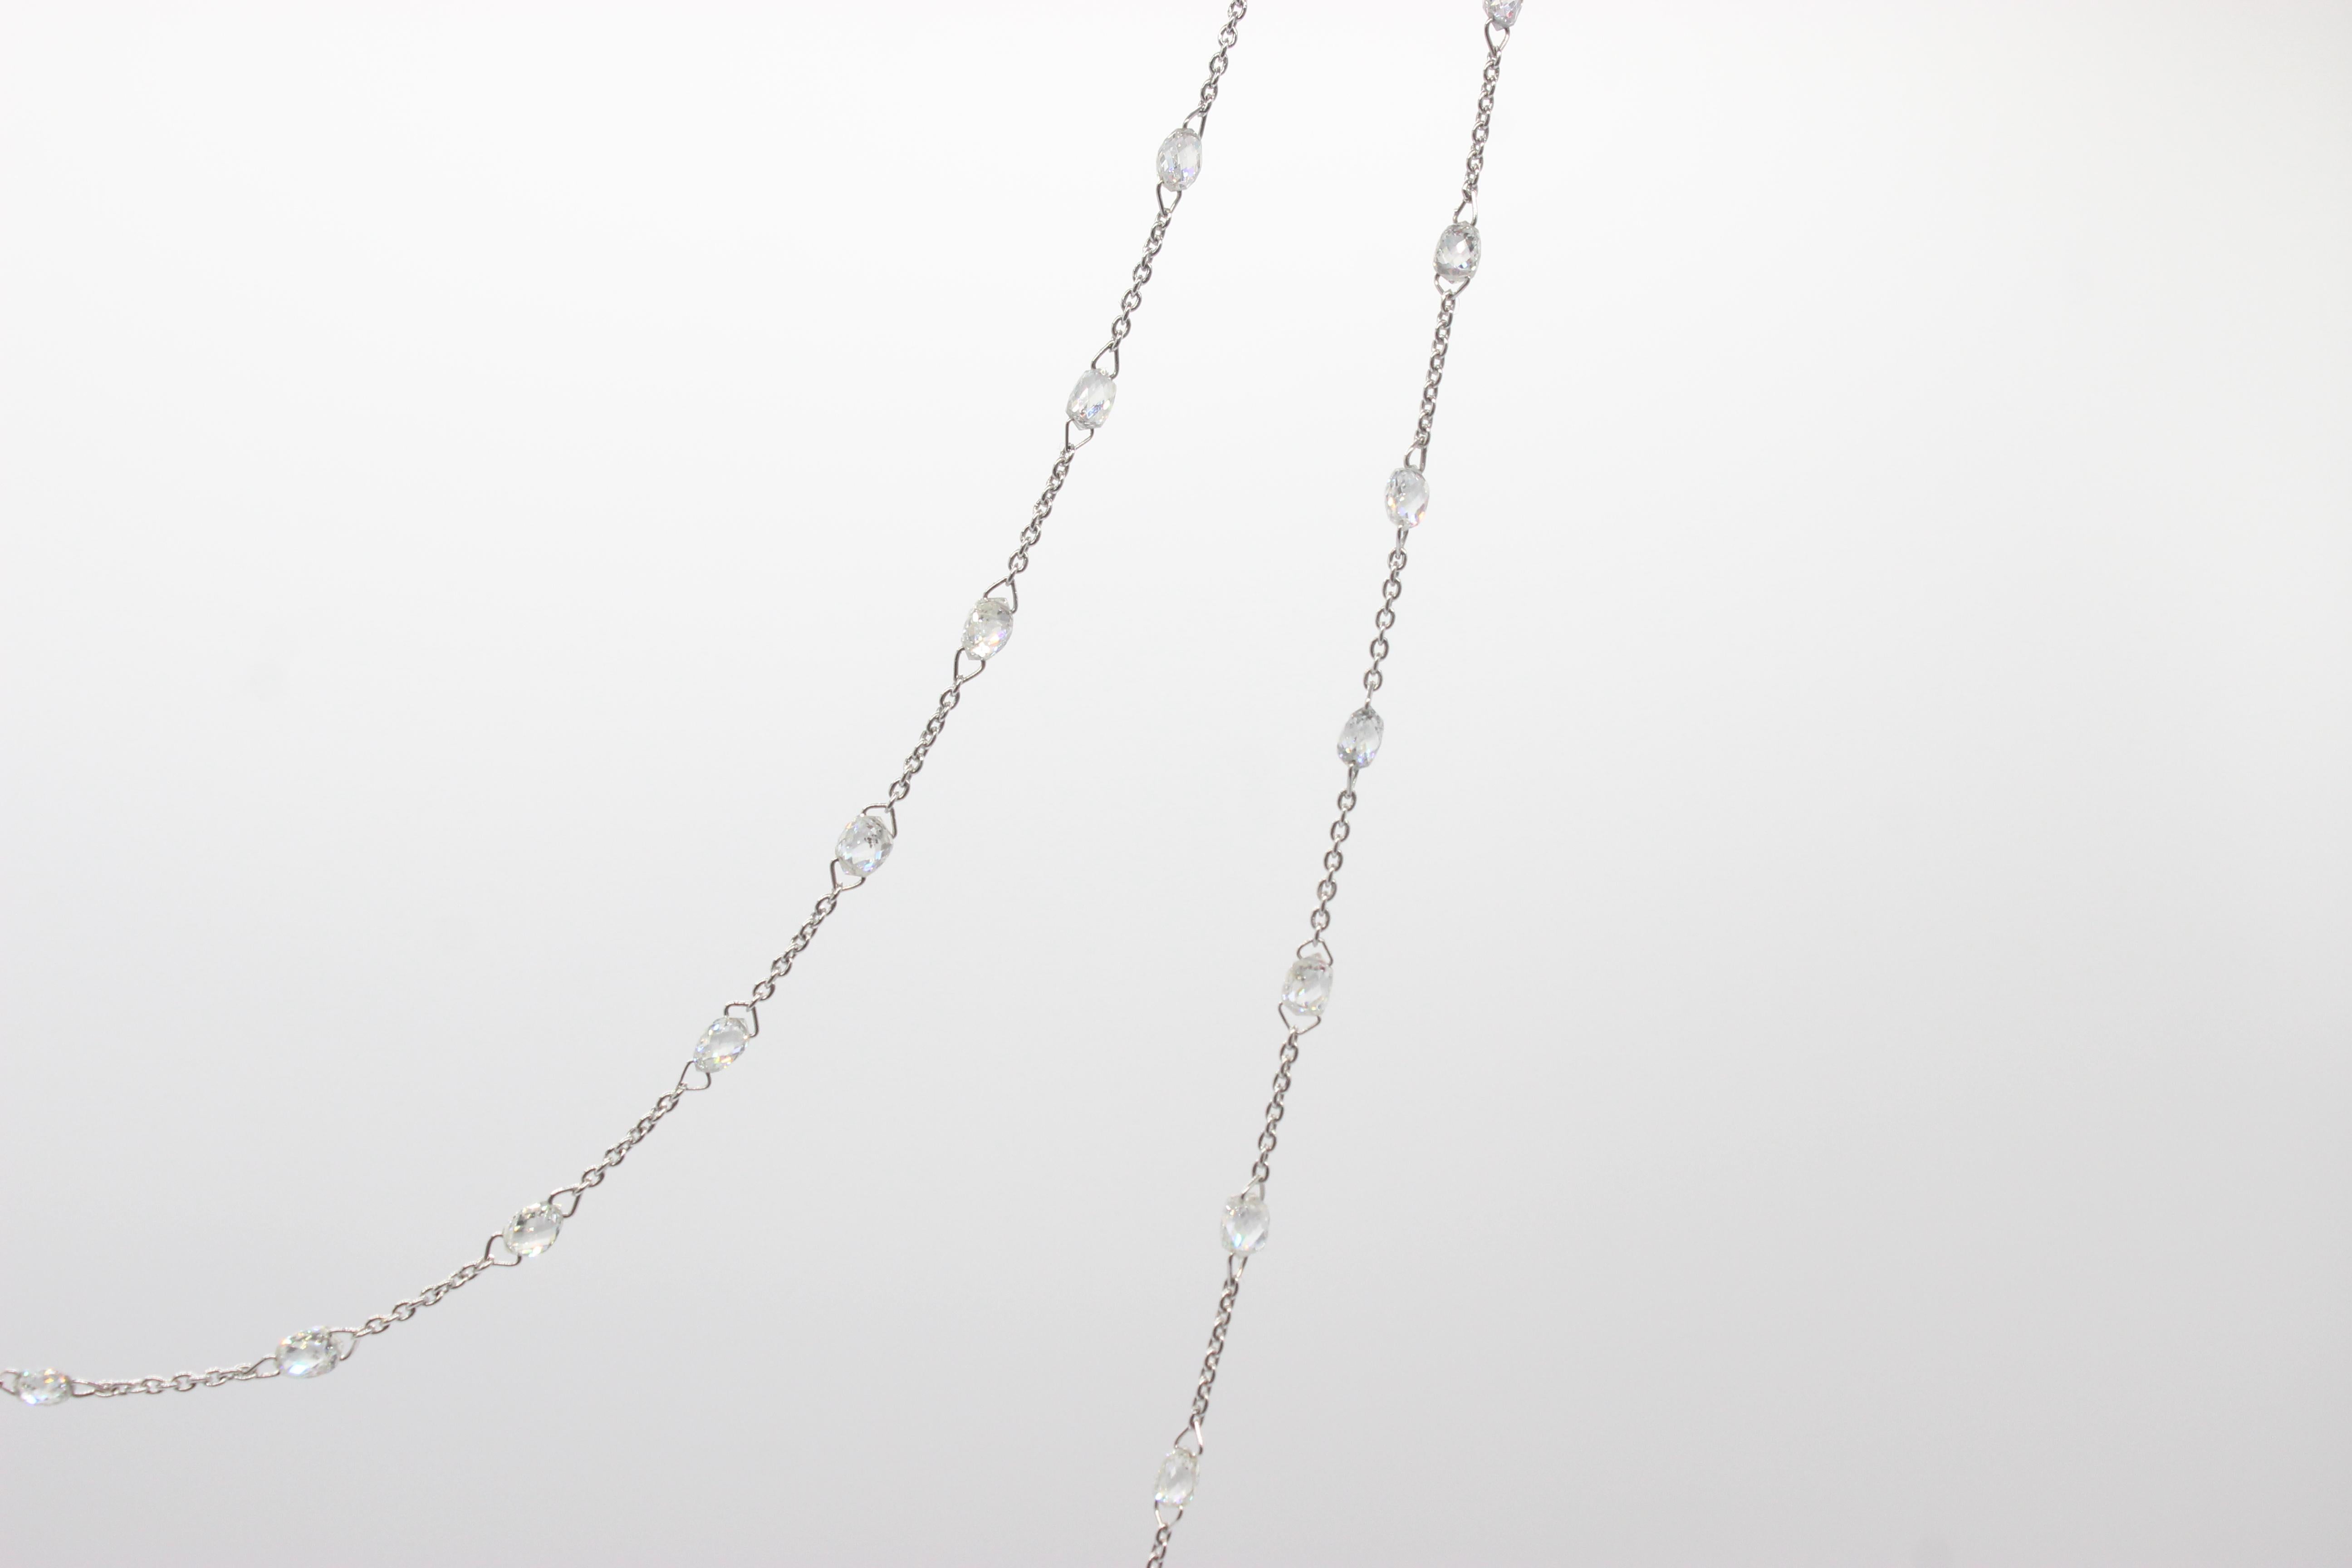 Briolette Cut PANIM  10 Carat Diamond Briolette 18 Karat White Gold Necklace For Sale